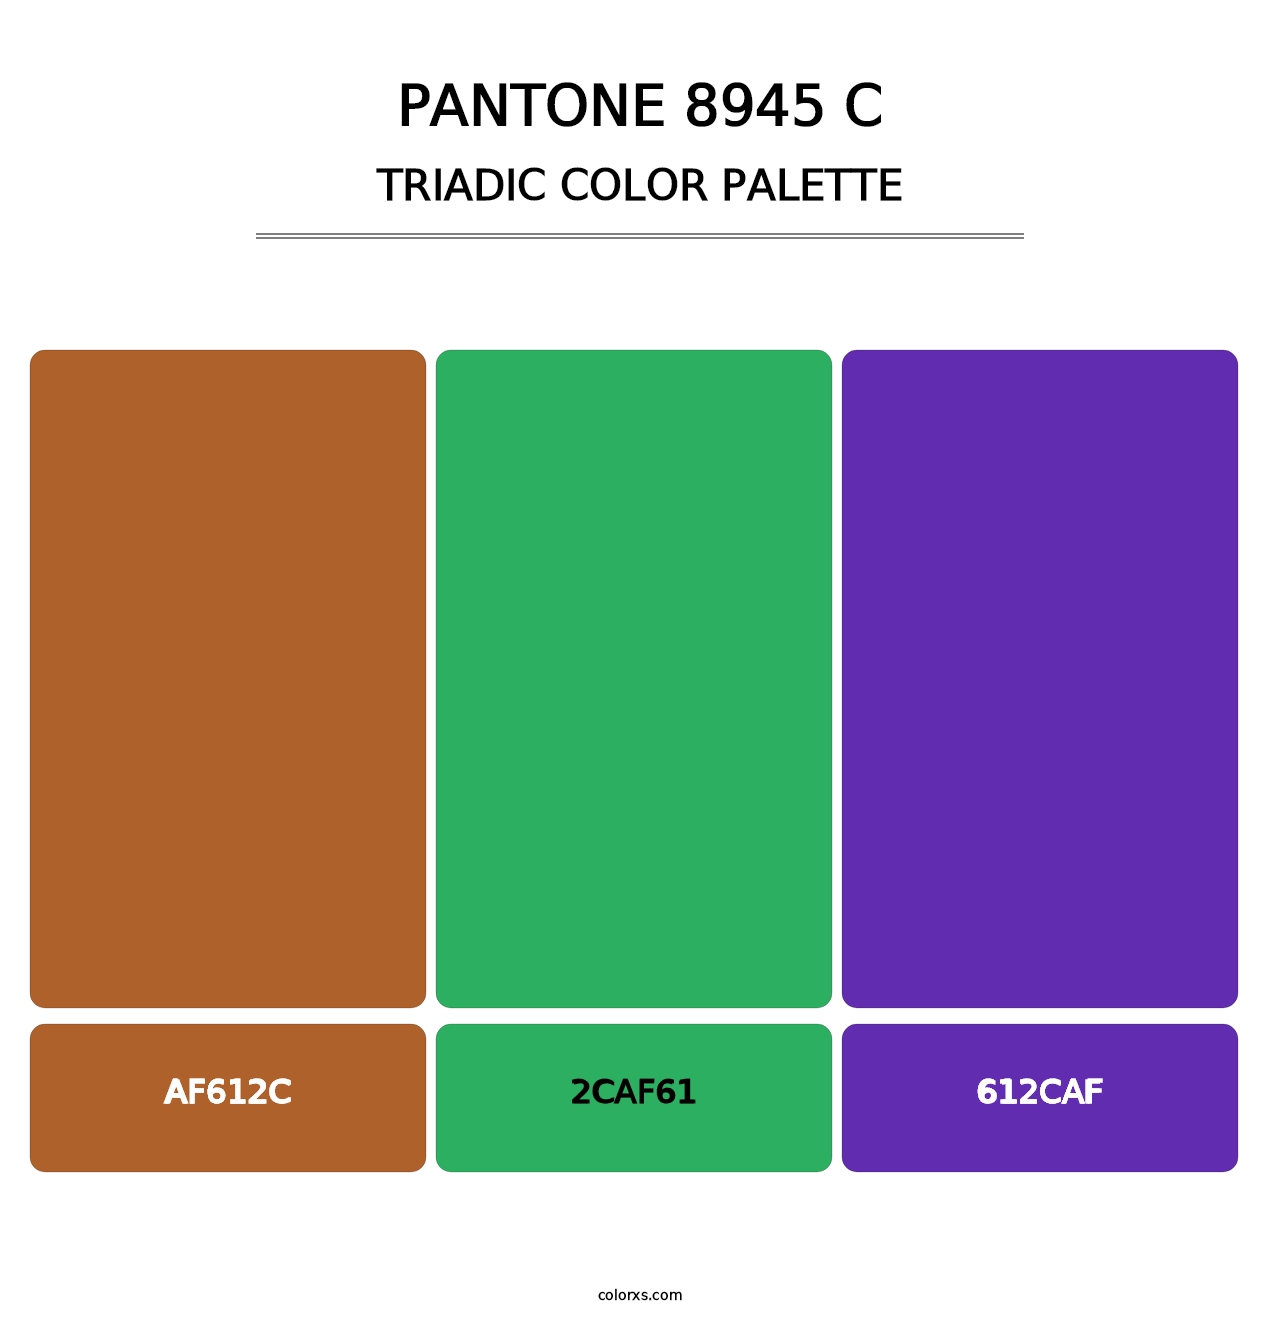 PANTONE 8945 C - Triadic Color Palette